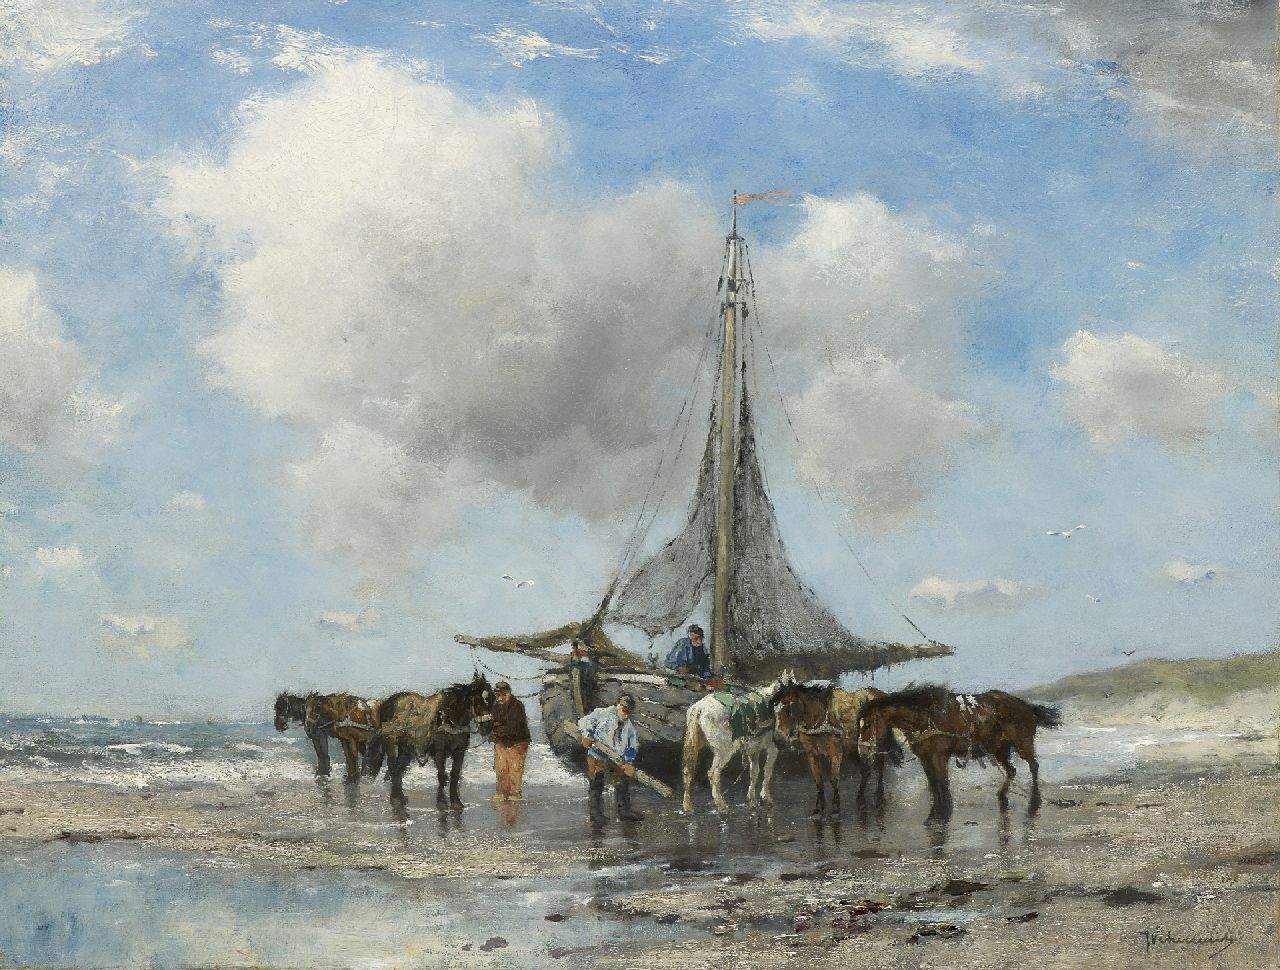 Scherrewitz J.F.C.  | Johan Frederik Cornelis Scherrewitz, Visserspink en trekpaarden op het strand, olieverf op doek 50,8 x 66,1 cm, gesigneerd rechtsonder